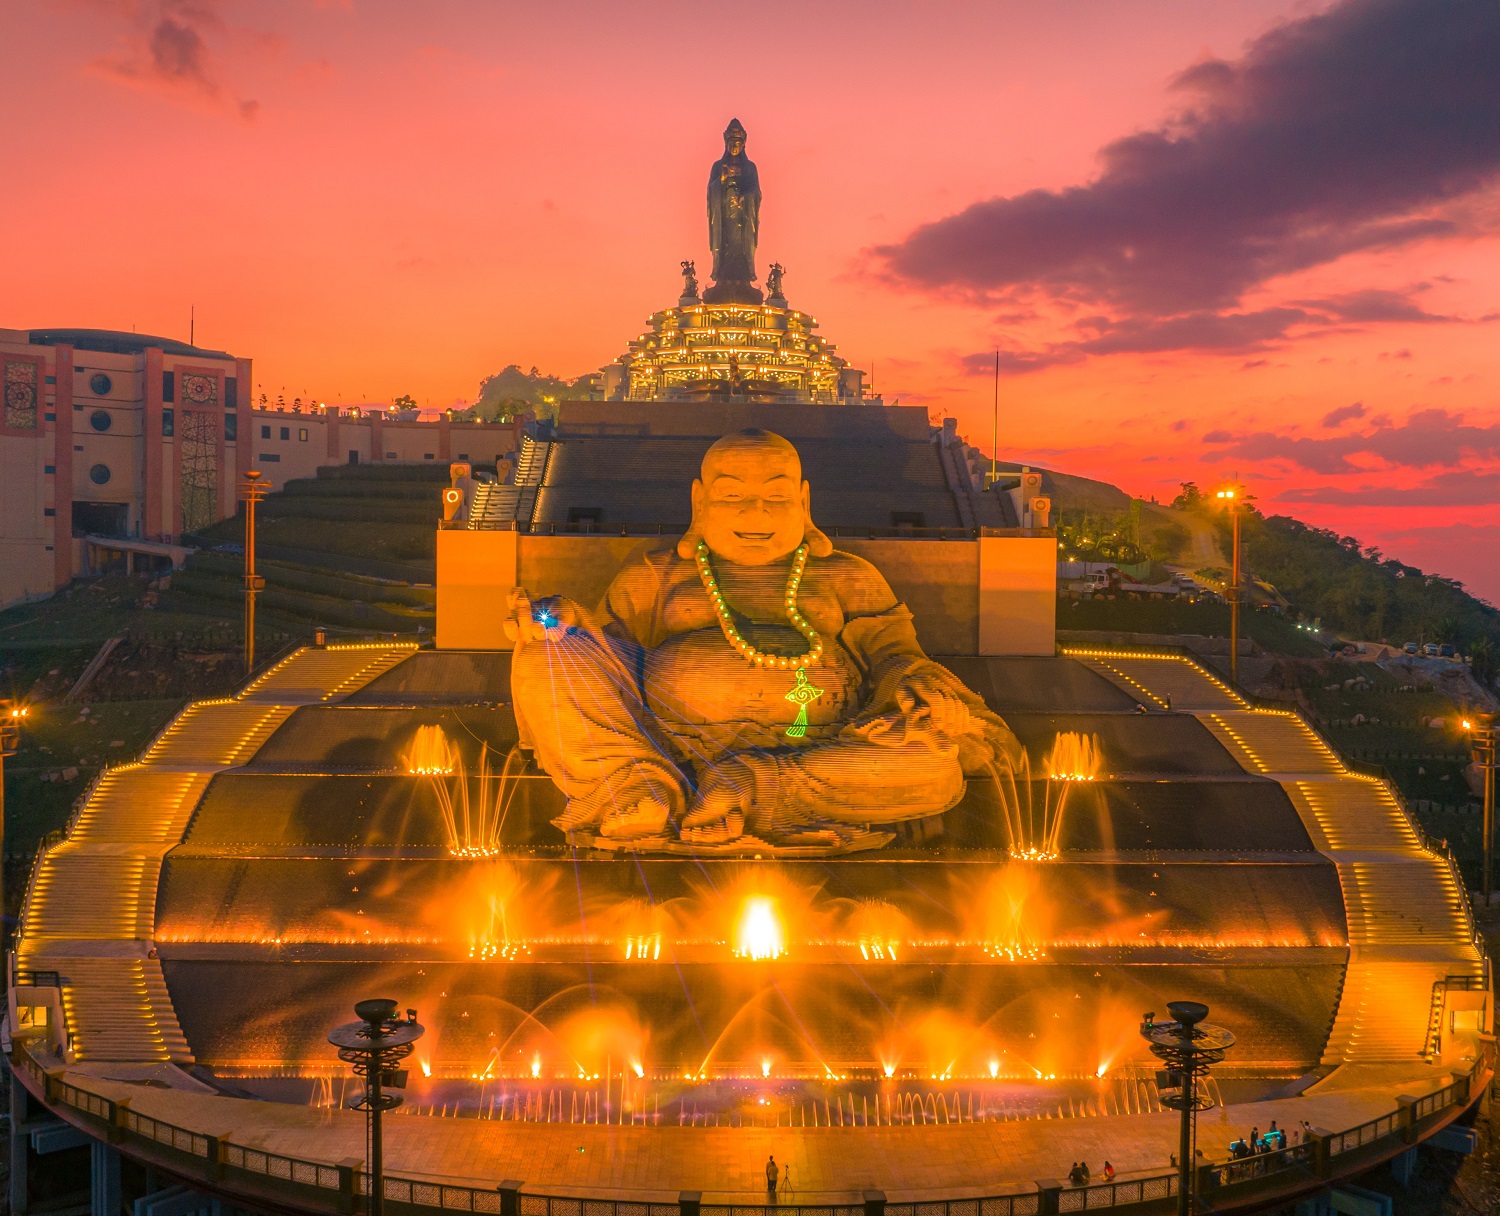 Tổng hợp hình Phật Di Lặc và Tượng Phật Di Lặc đẹp nhất 2021